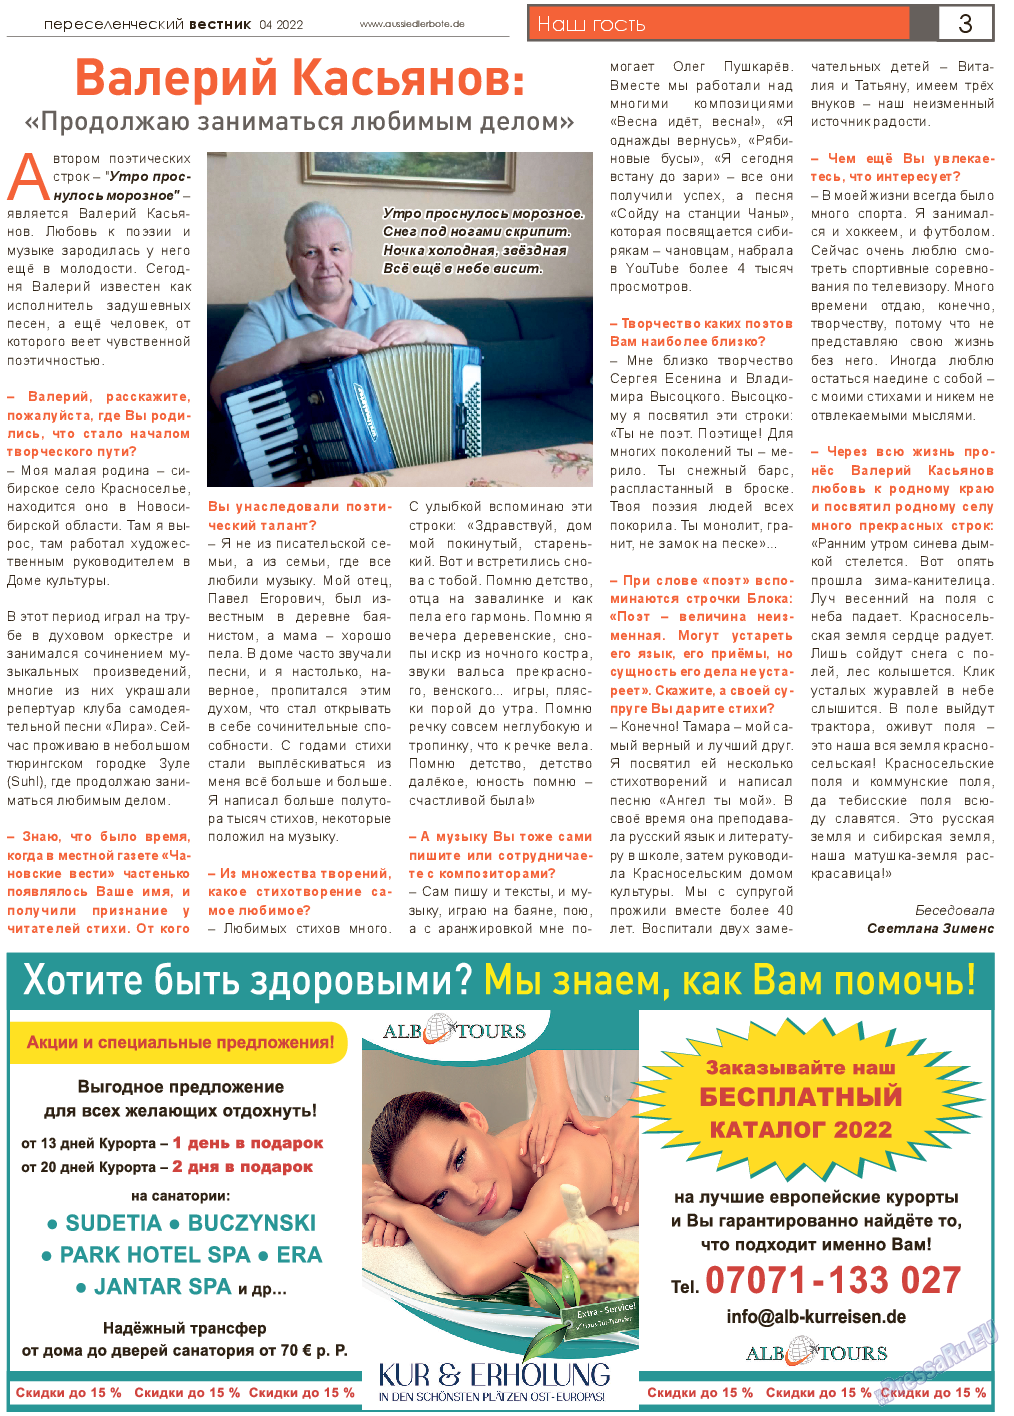 Переселенческий вестник (газета). 2022 год, номер 4, стр. 3